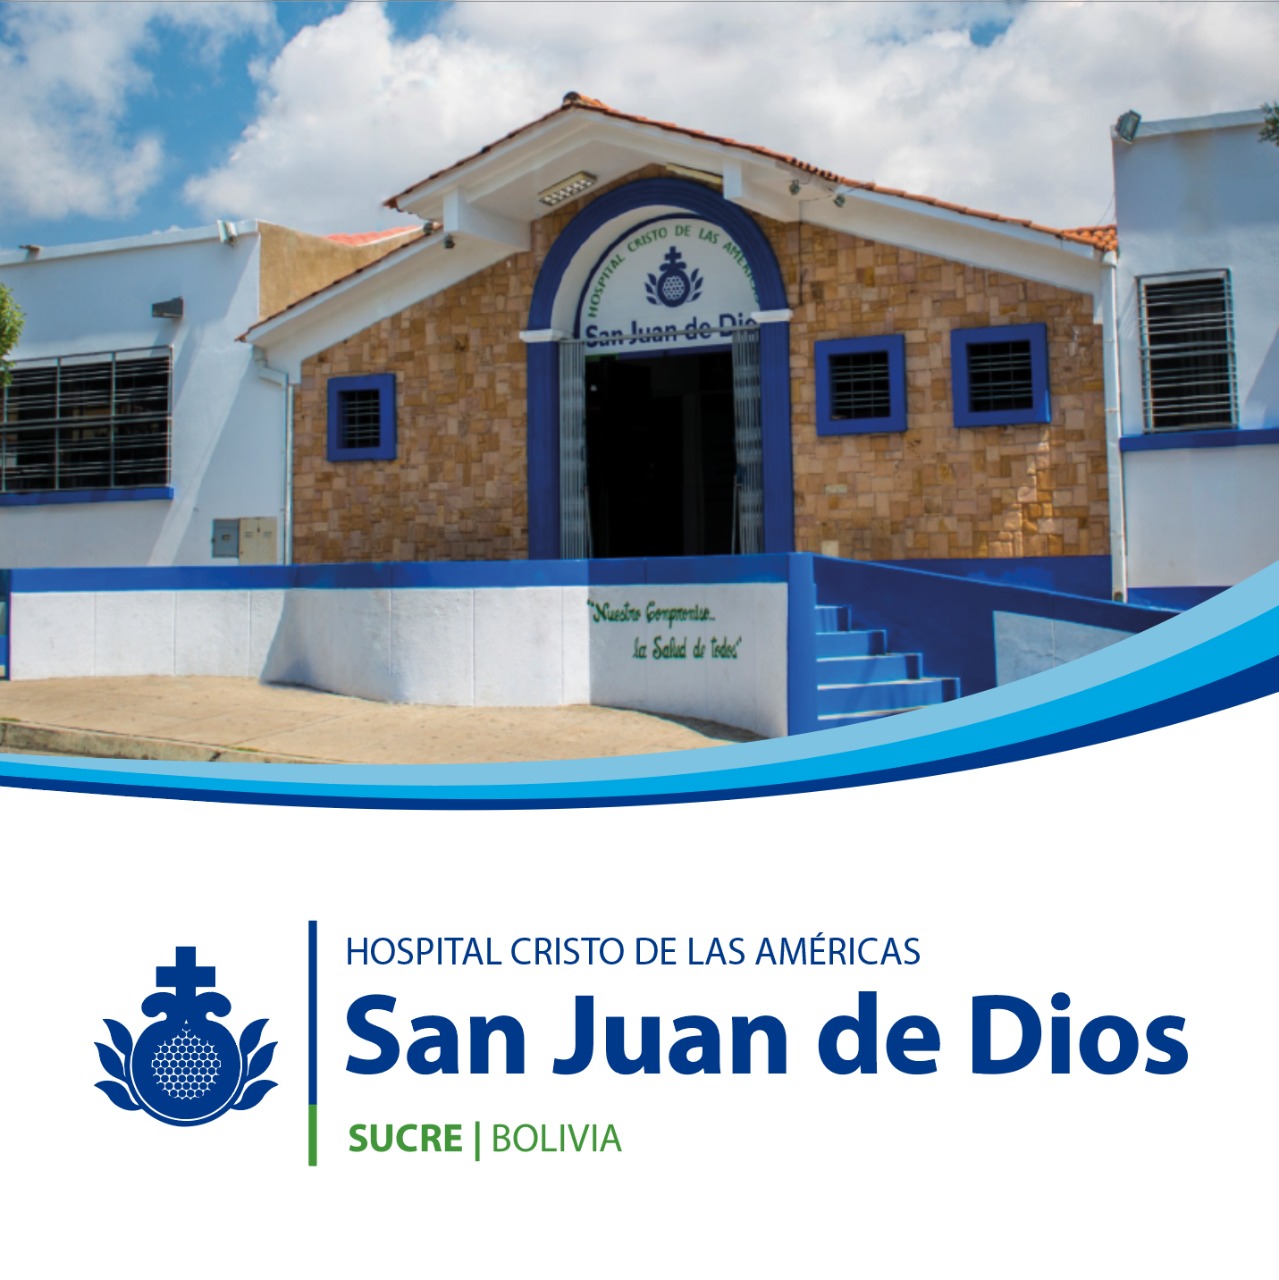 Centro Bolivia Hospital Cristo de las Americas San Juan de Dios | Orden Hospitalaria San Juan de Dios